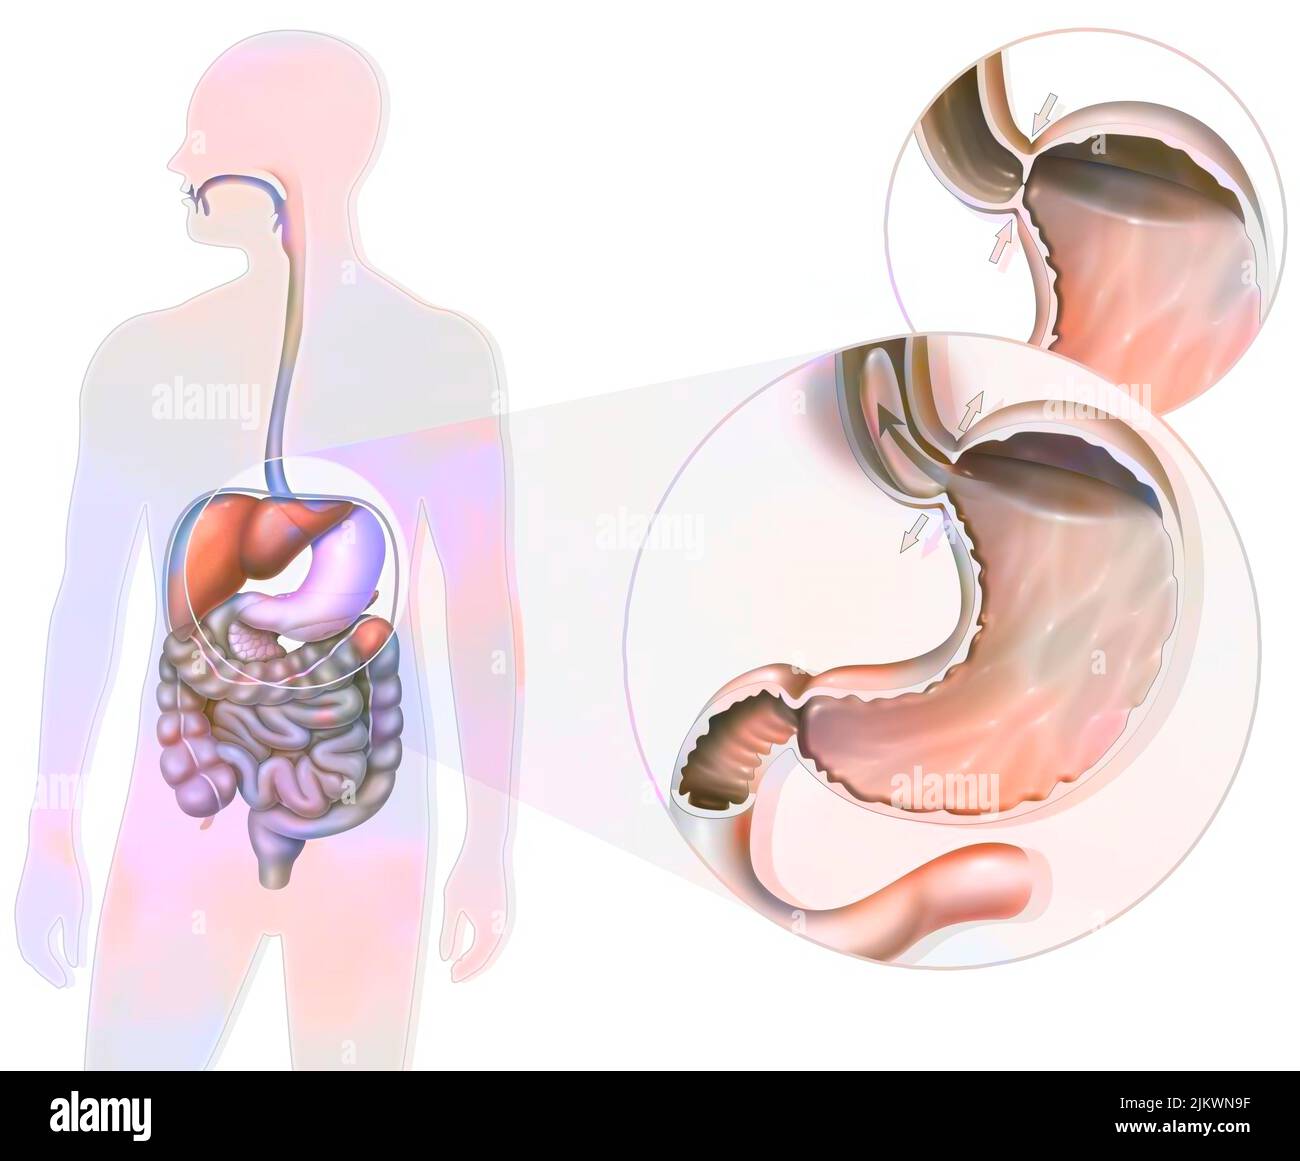 Gastroösophageale Refluxkrankheit: Lokalisation des Magens und Zoom des gastroösophagealen Schließmuskel. Stockfoto